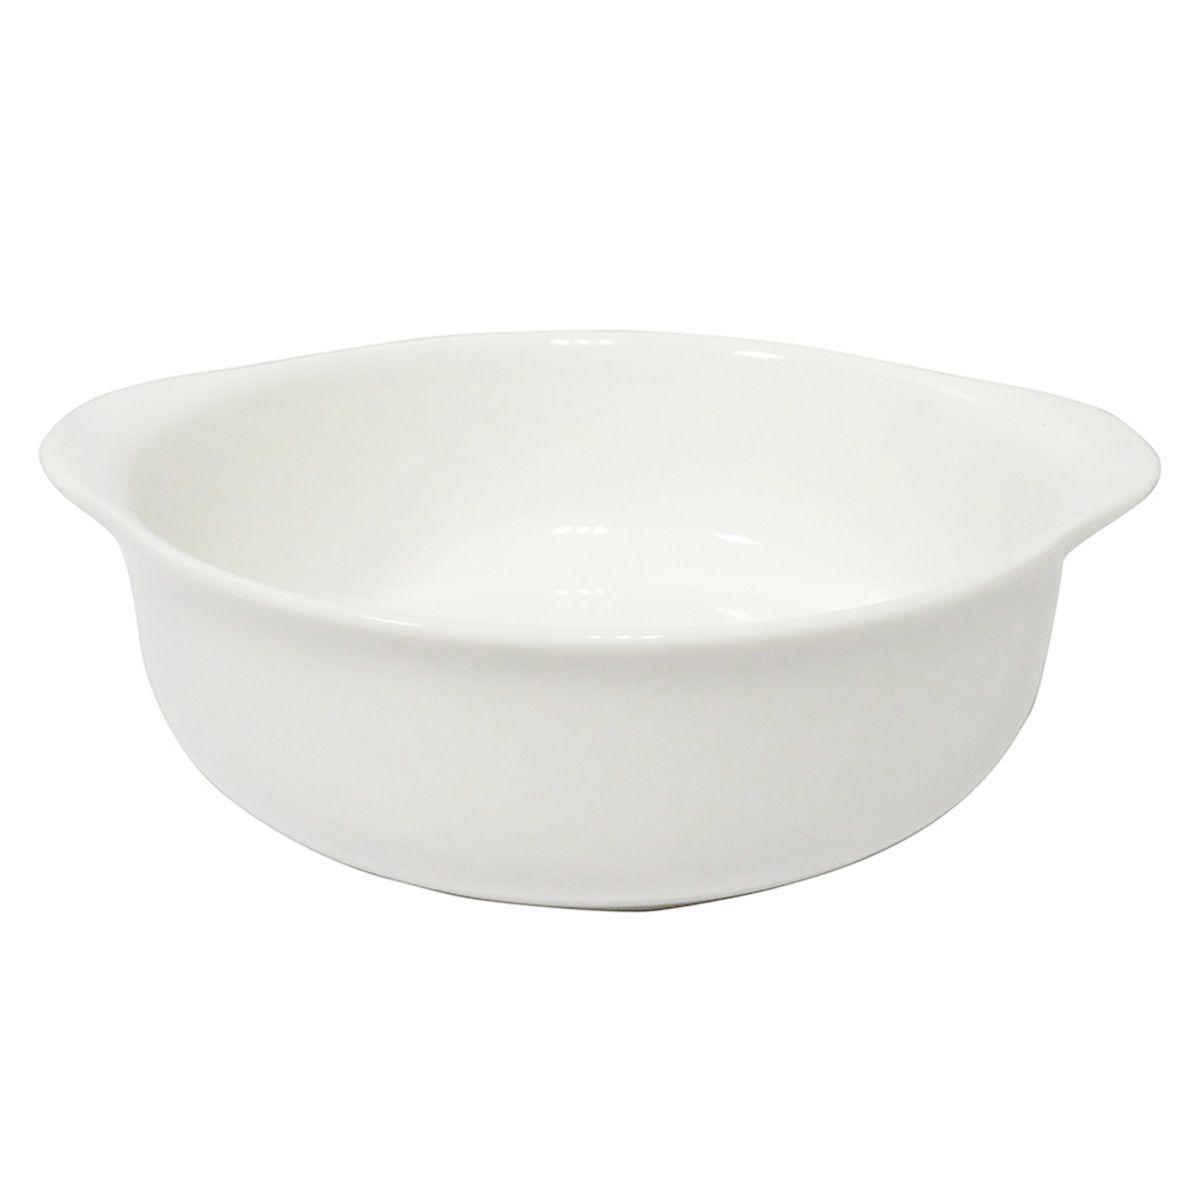 耐熱皿 オーブンプレート グラタン皿 耐熱食器 白 約φ17×H5cm 323691